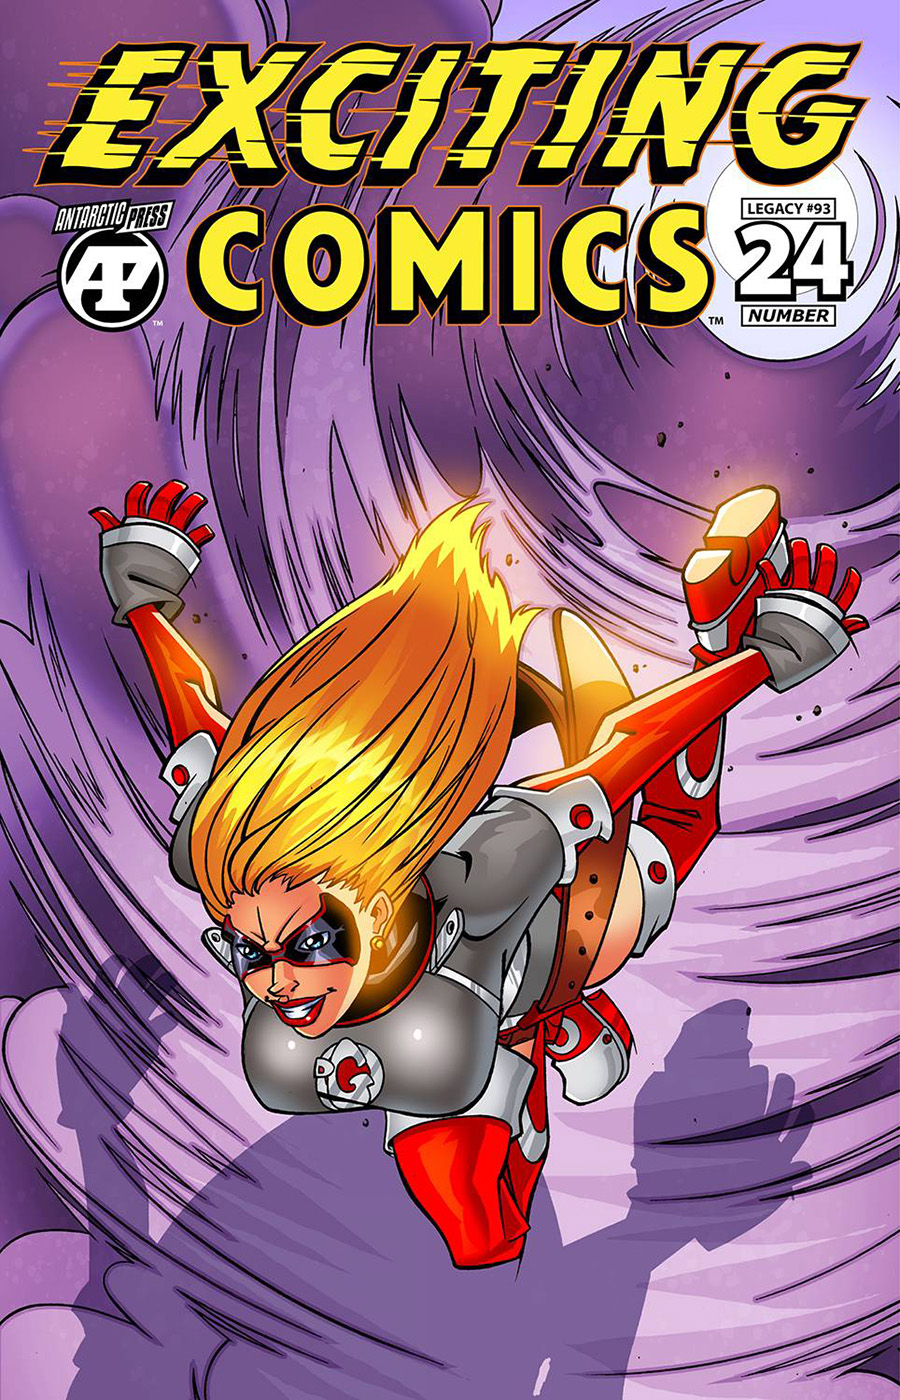 Exciting Comics Vol 2 #24